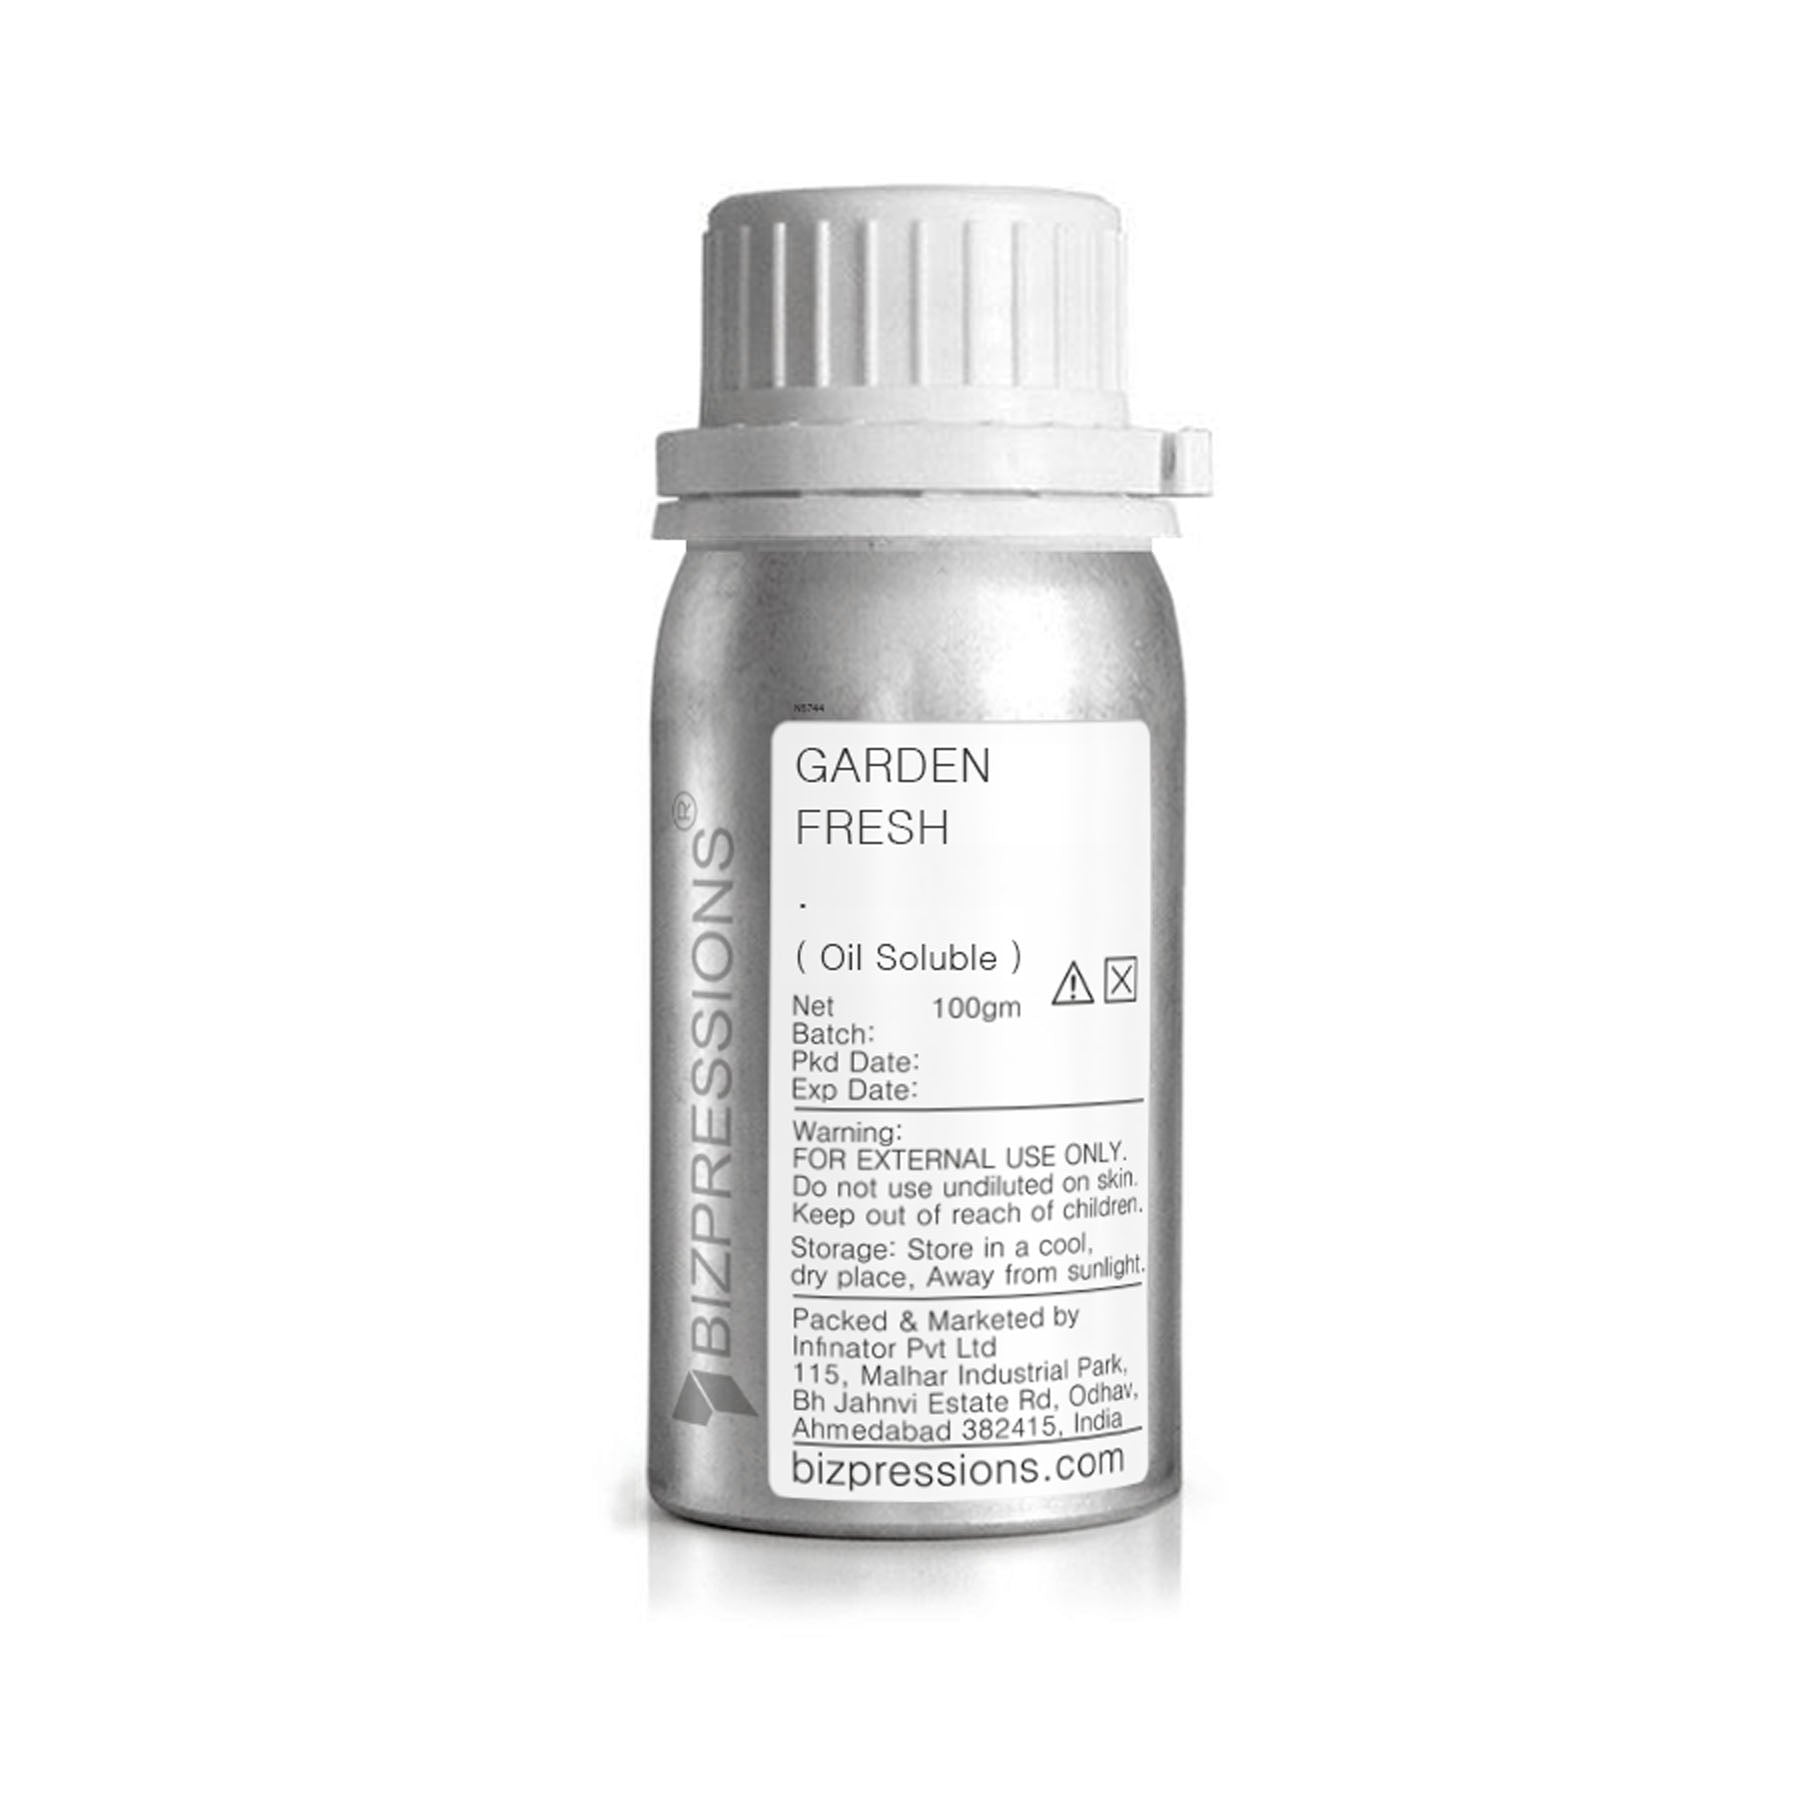 GARDEN FRESH - Fragrance ( Oil Soluble ) - 100 gm